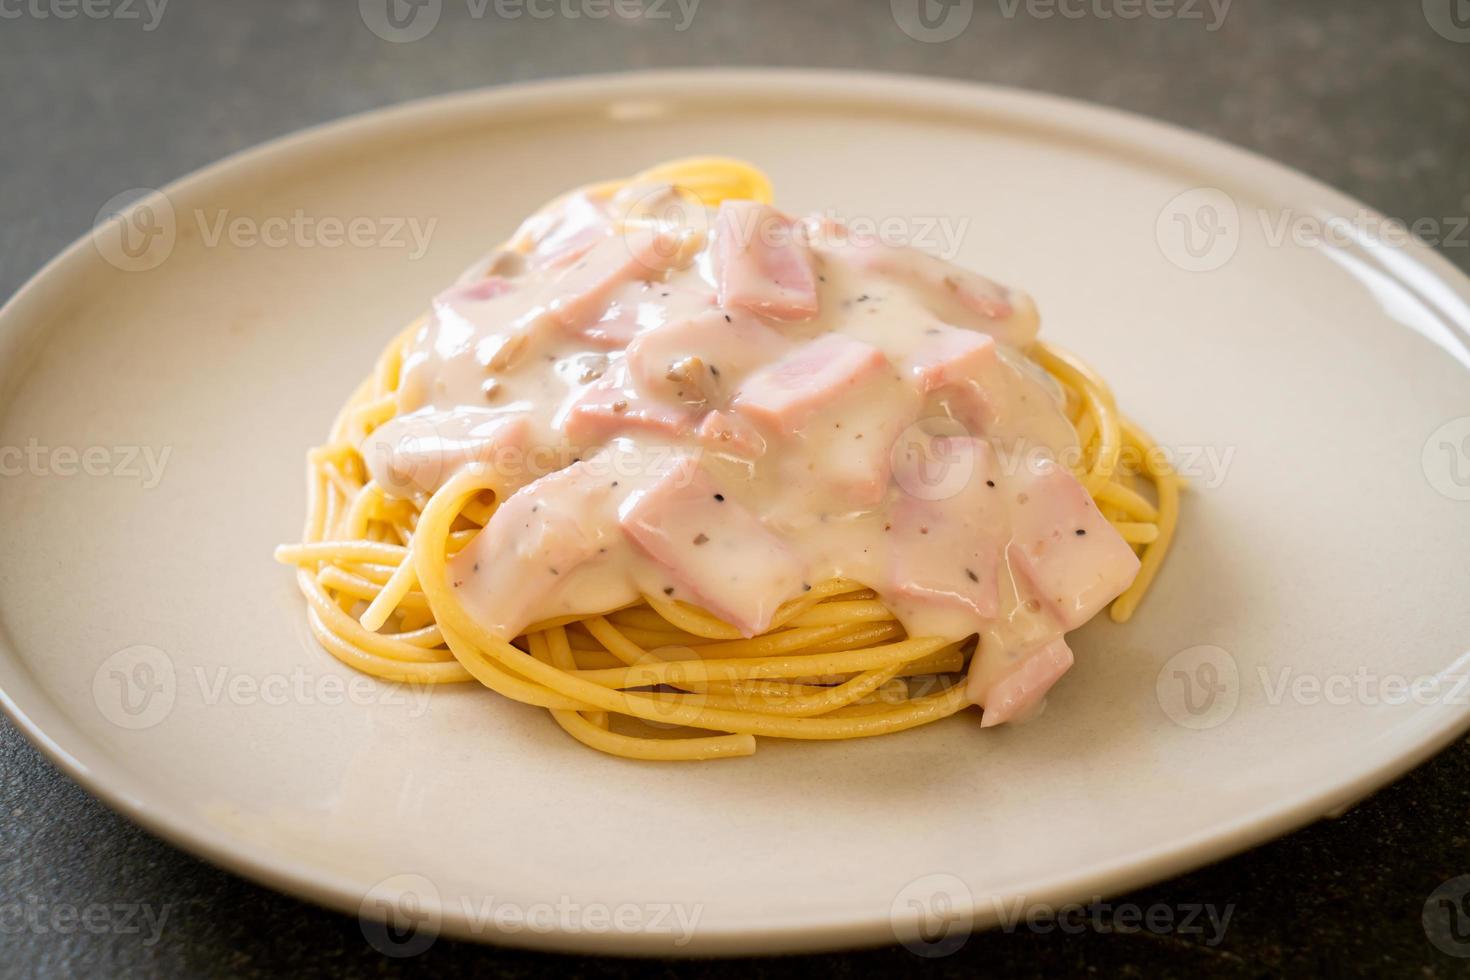 hemlagad vit spagetti gräddsås med skinka - italiensk matstil foto